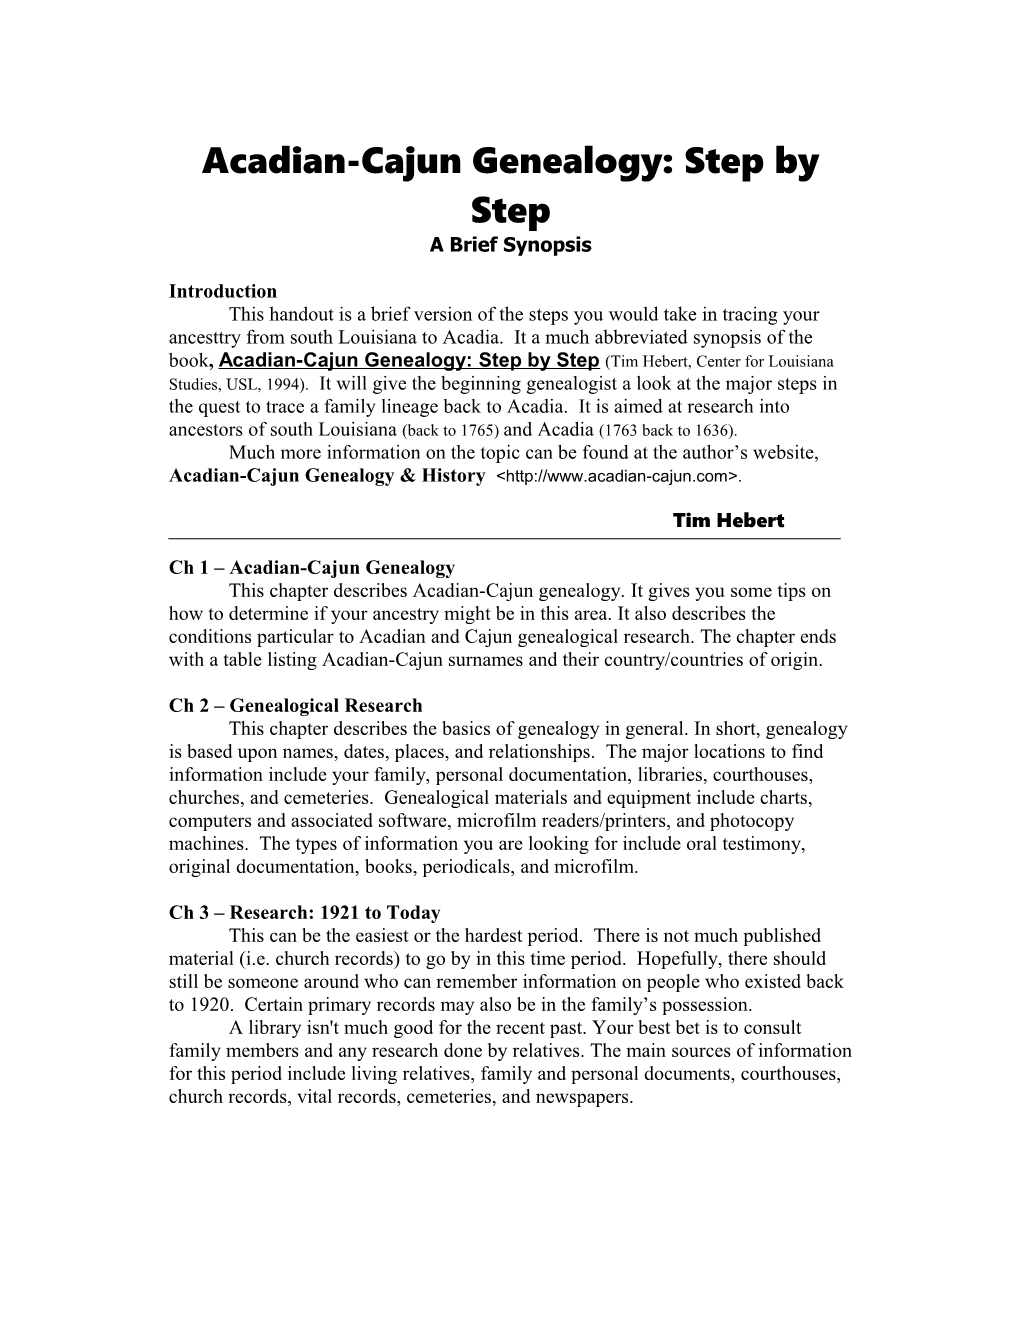 Acadian-Cajun Genealogy: Step by Step